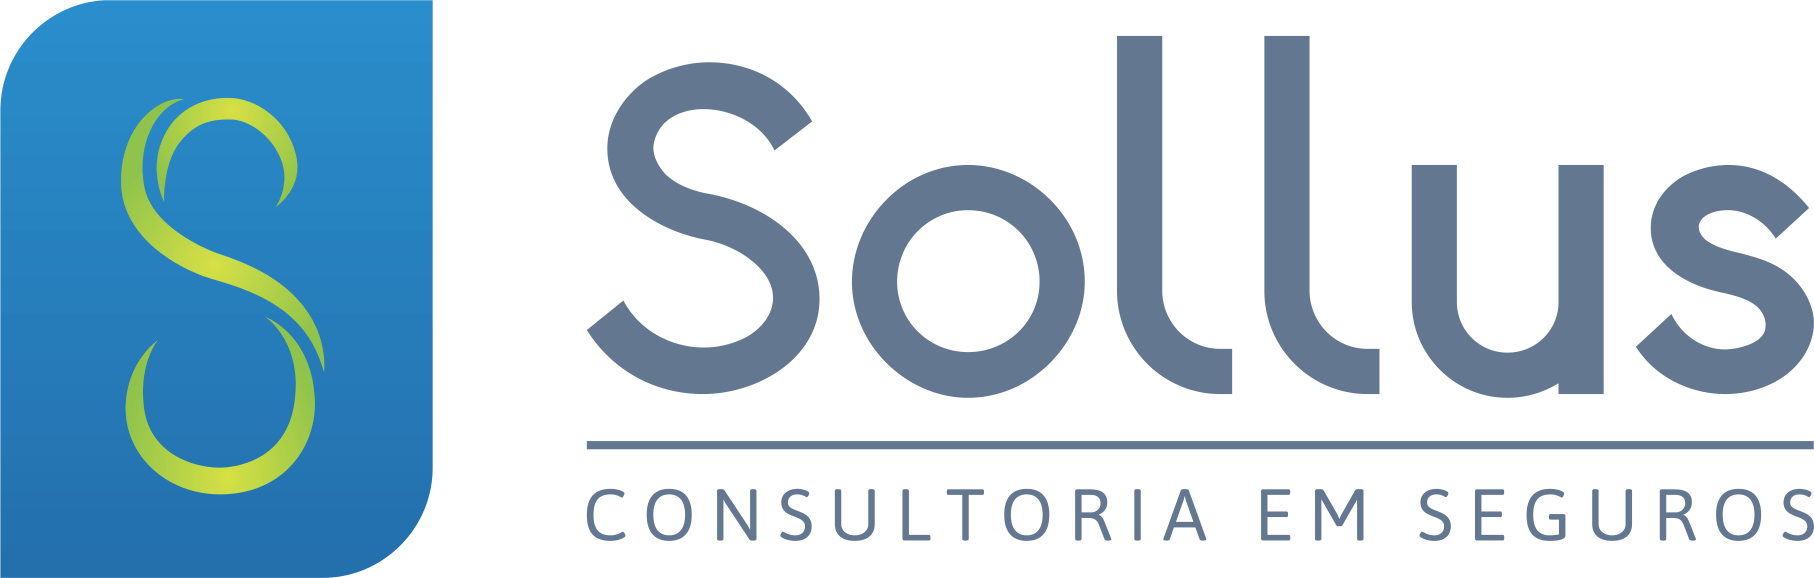 Sollus - Consultoria em seguros